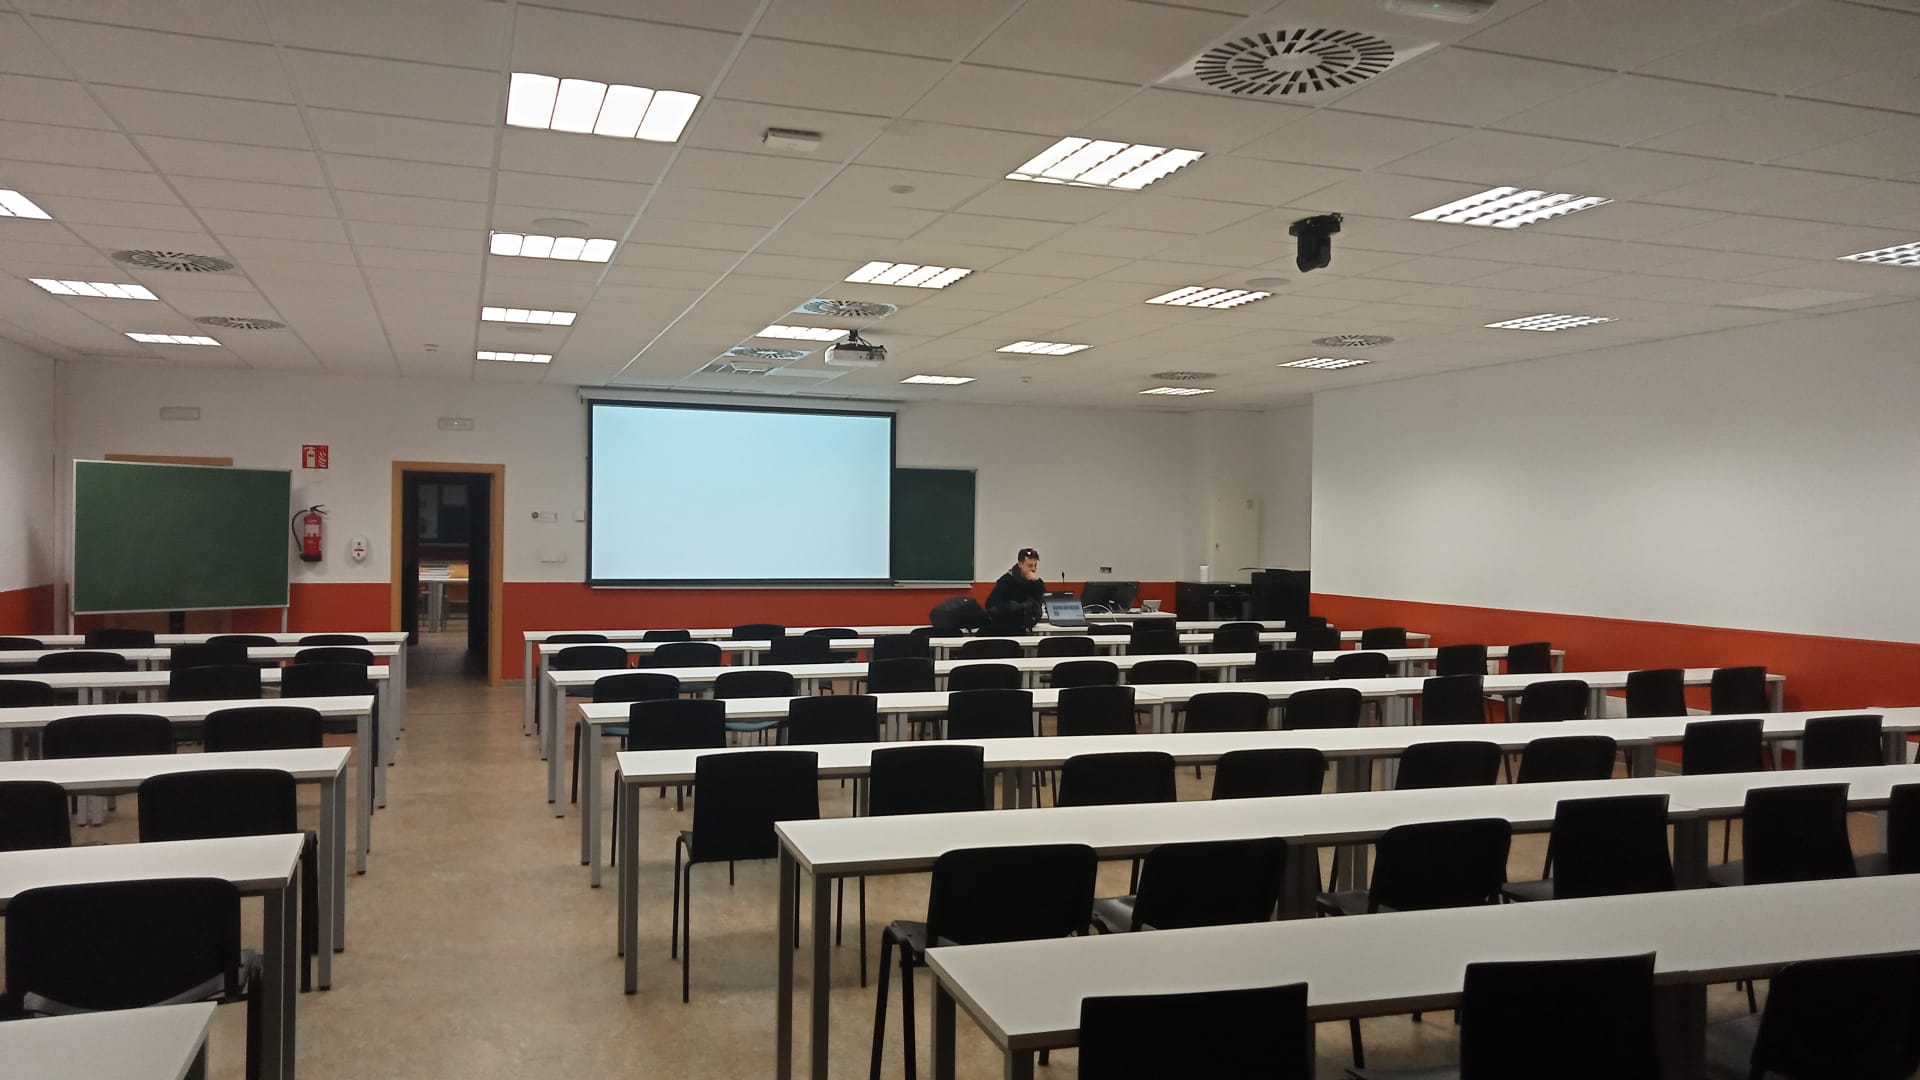 la Universidad Rey Juan Carlos realiza una integración con los equipos Xilica y Sennheiser para sus clases presenciales y a distancia